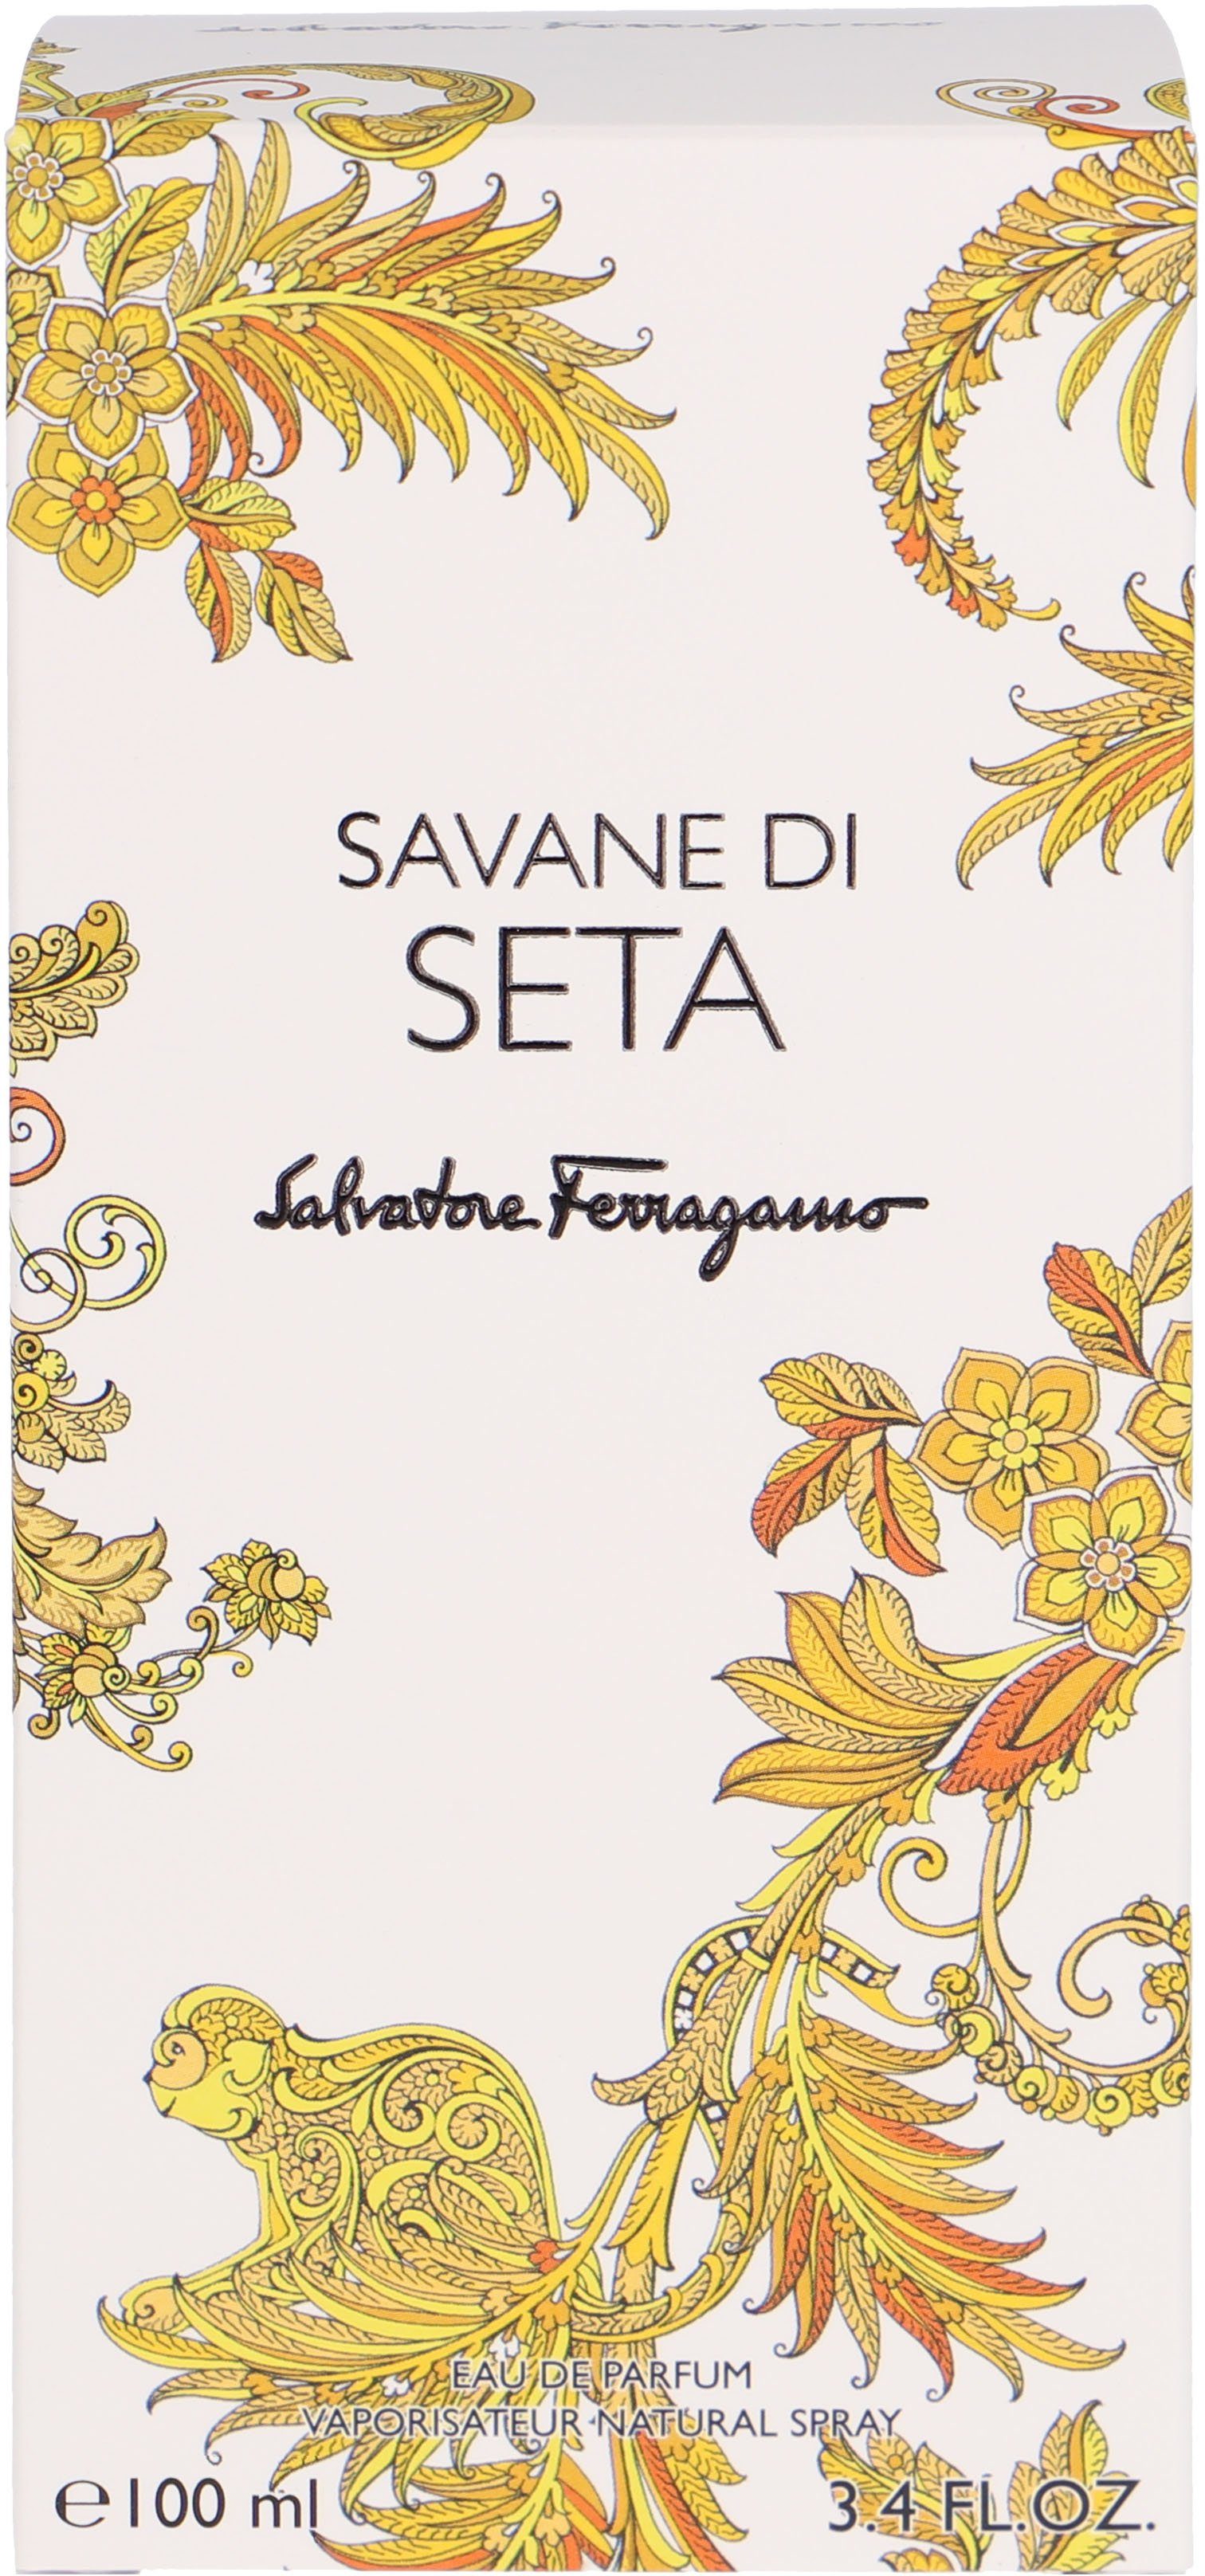 Salvatore Ferragamo Seta Savane Eau di de Parfum